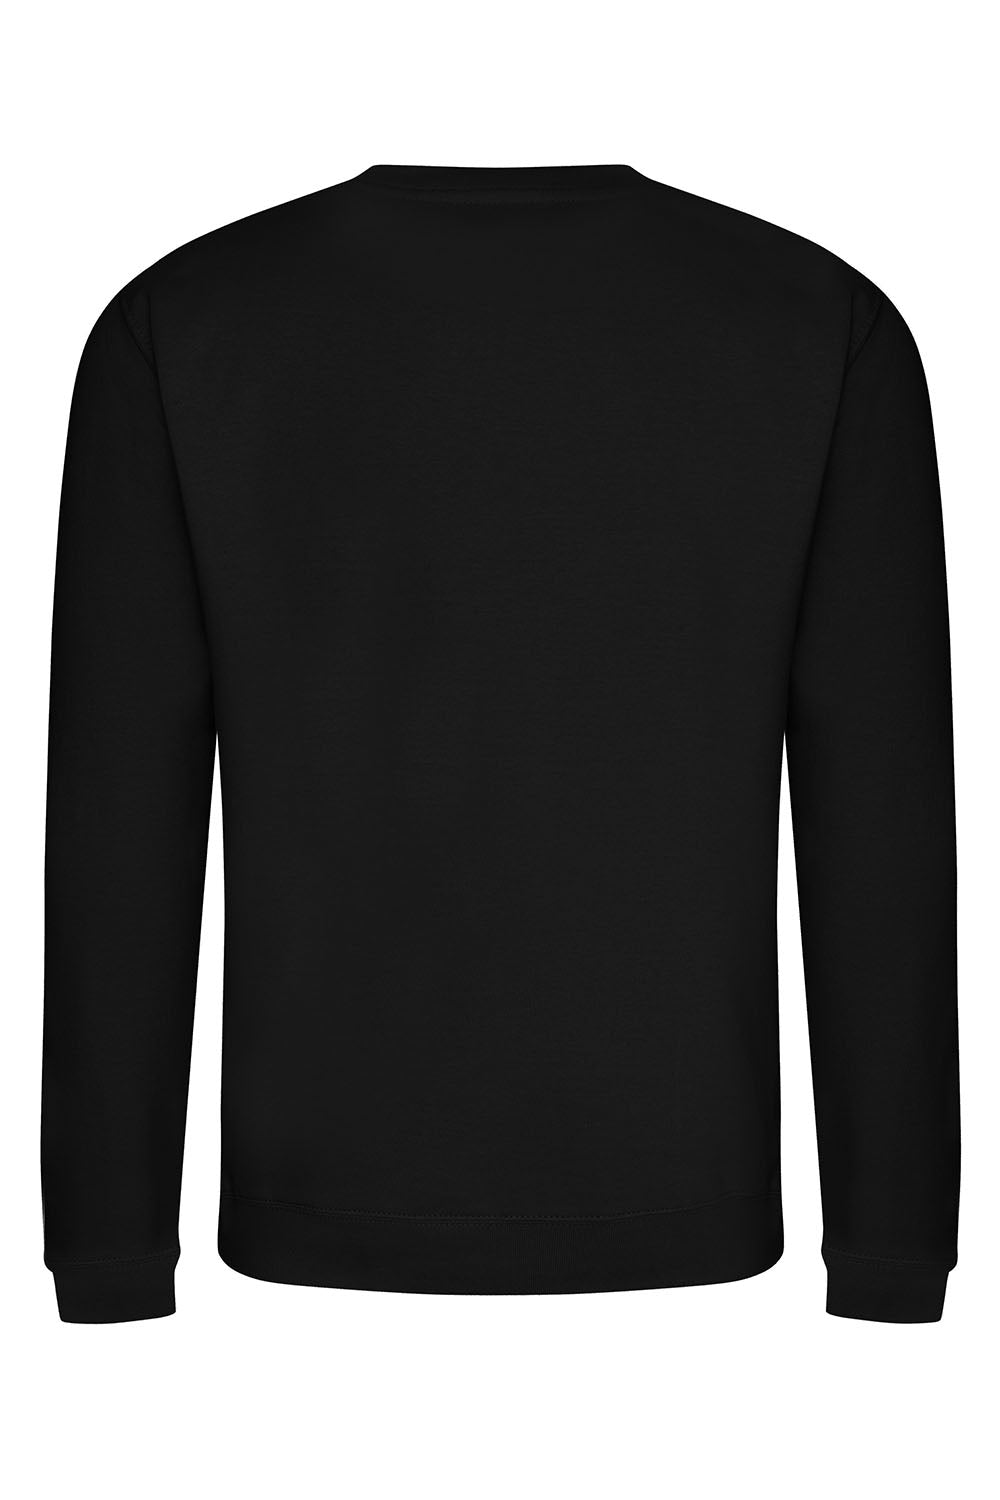 Palm Springs Teddy Sweatshirt In Black (Custom Pack)